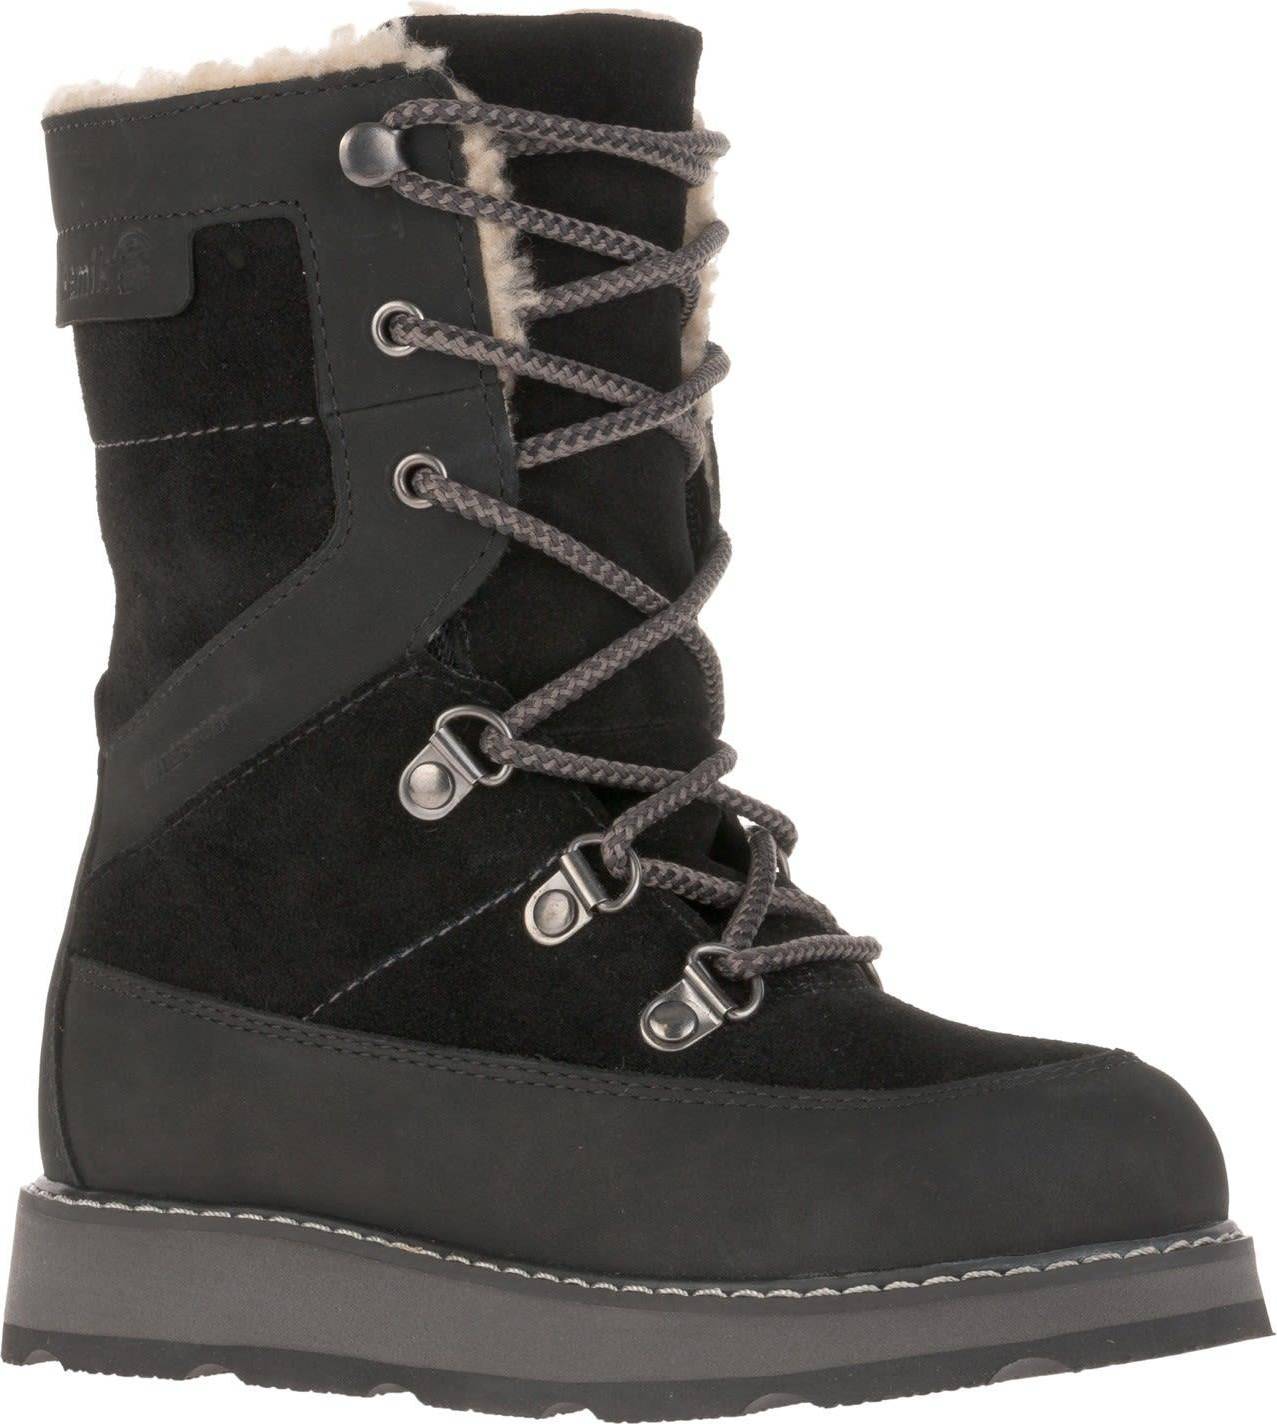  Bild på Kamik Snow Boots Rise Z - Black vinterskor